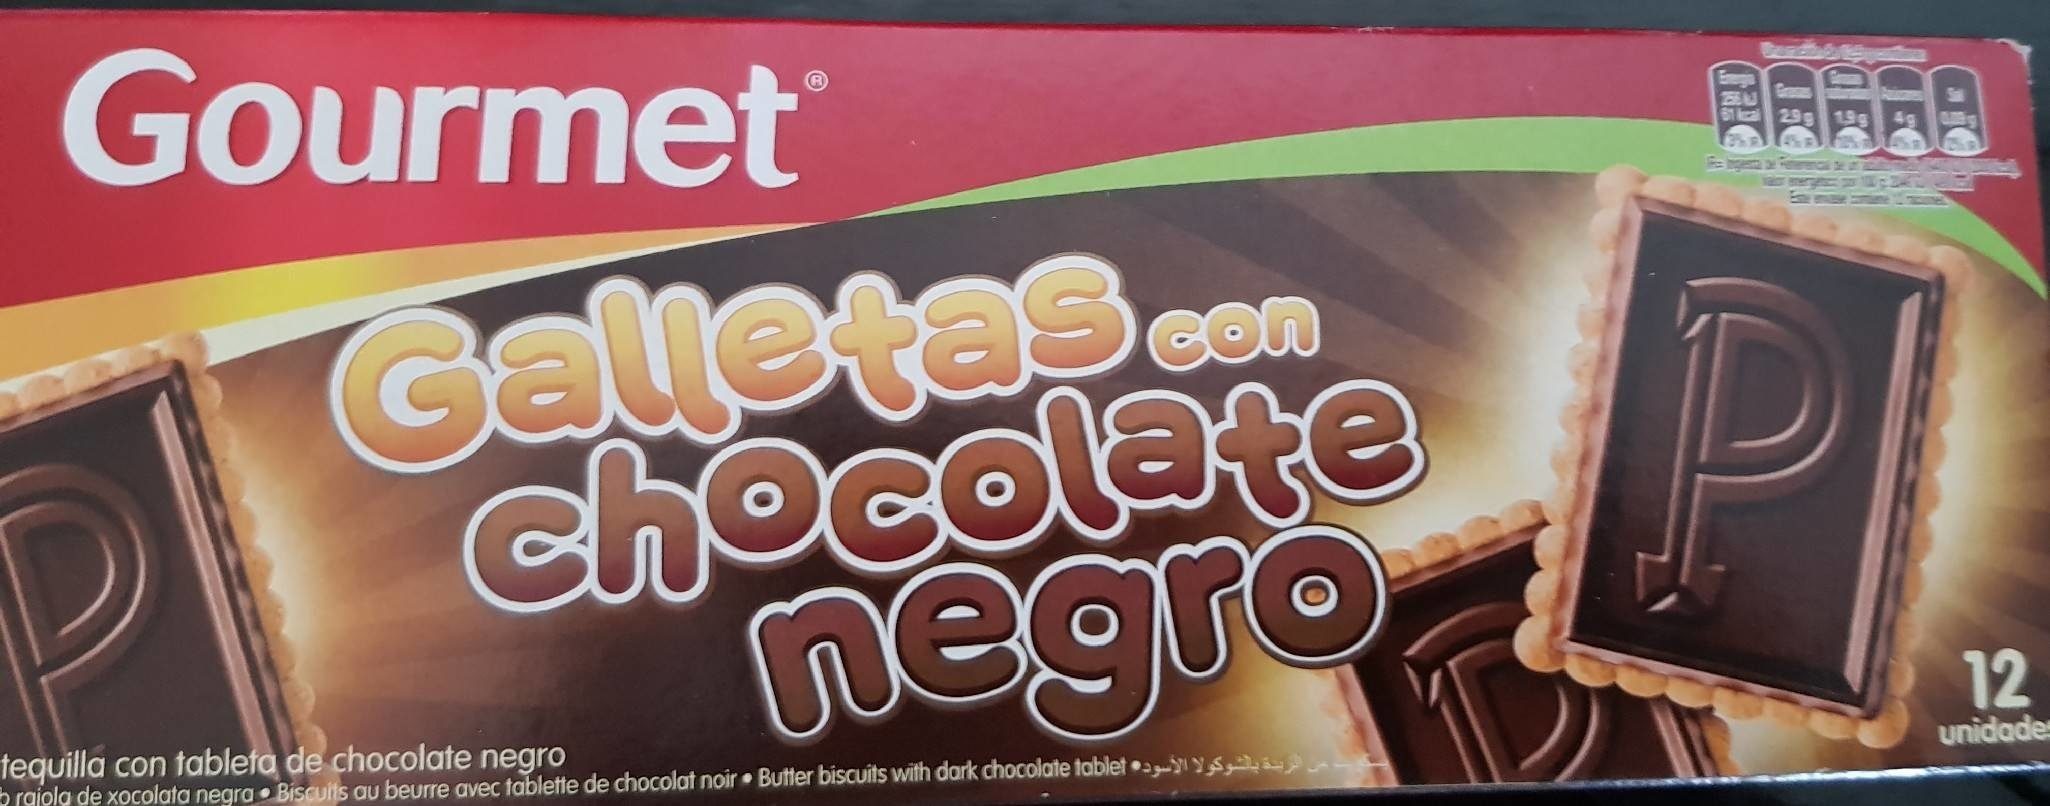 Galletas con chocolate negro - Product - fr